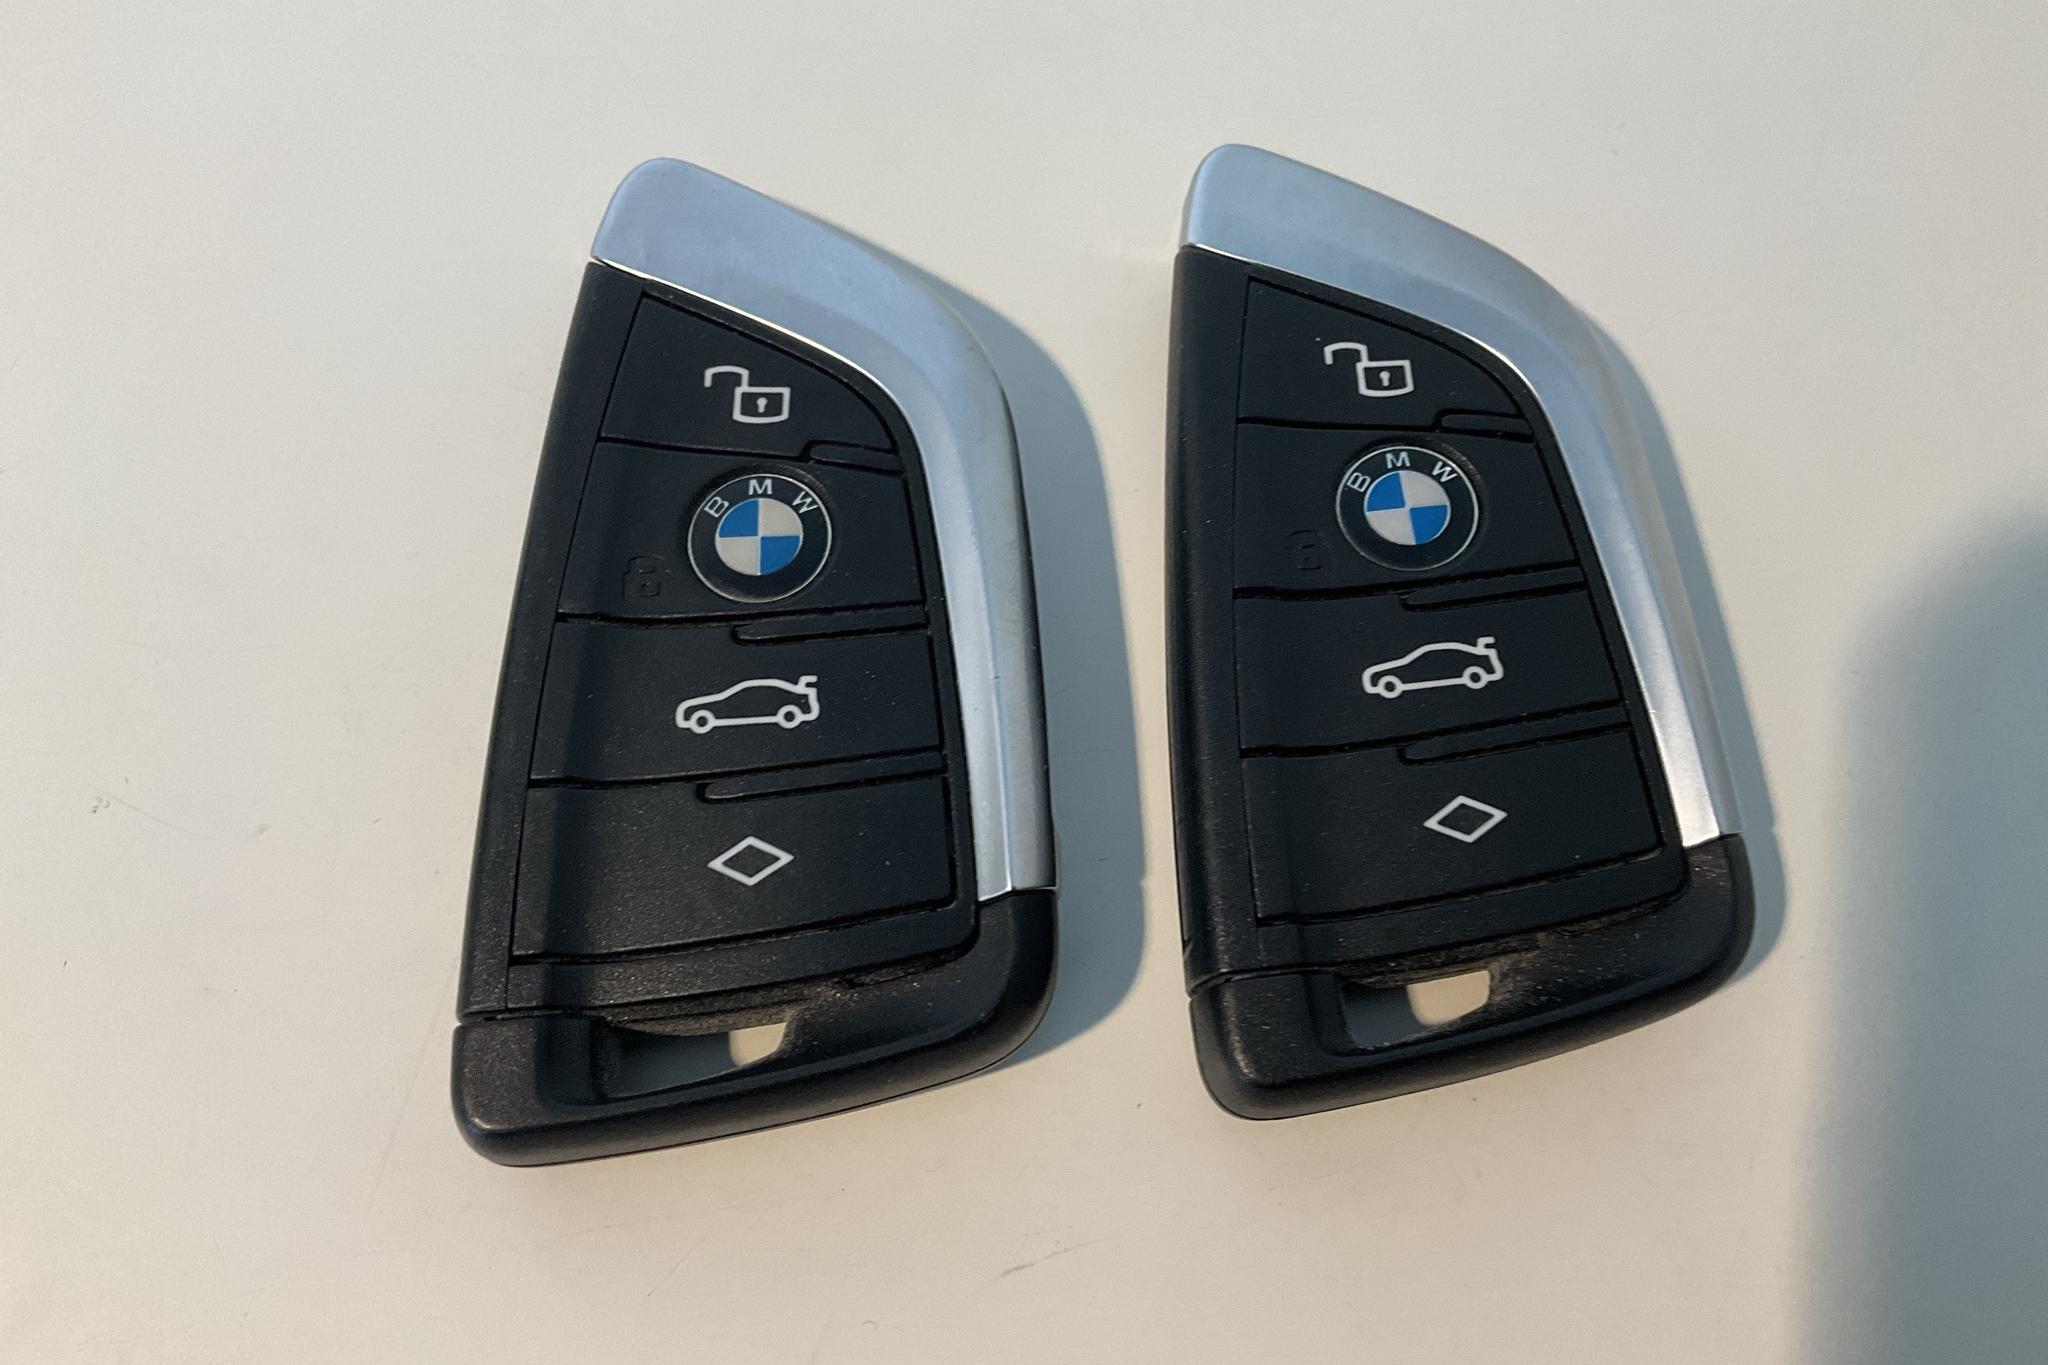 BMW X4 xDrive20d, G02 (190hk+11hk) - 118 980 km - Automatic - gray - 2021